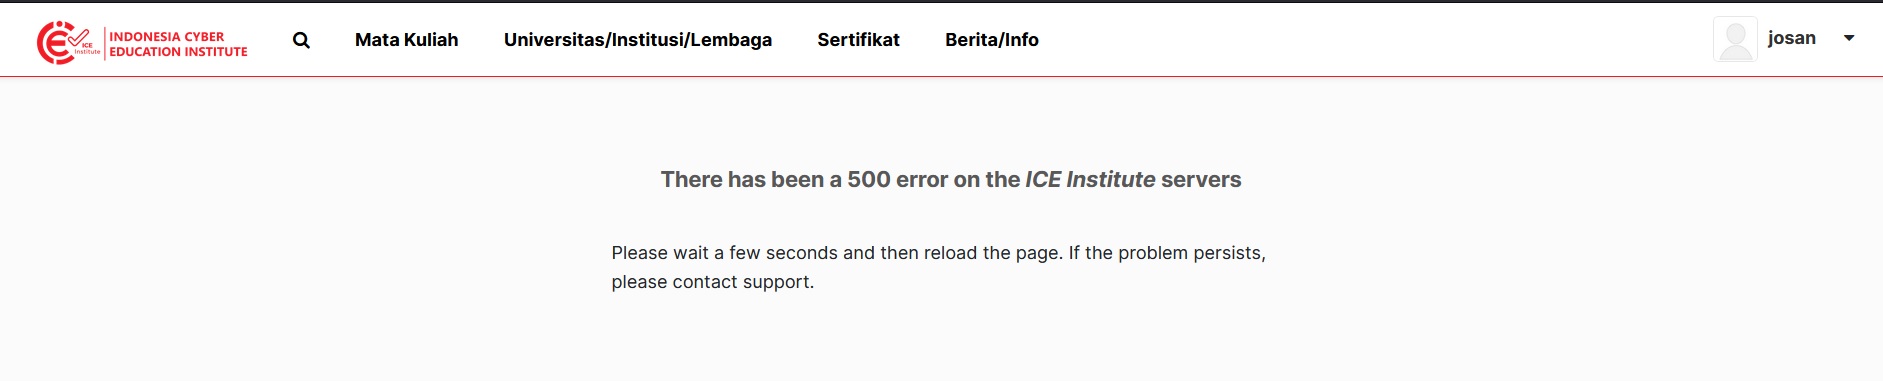 error 500 ice institute